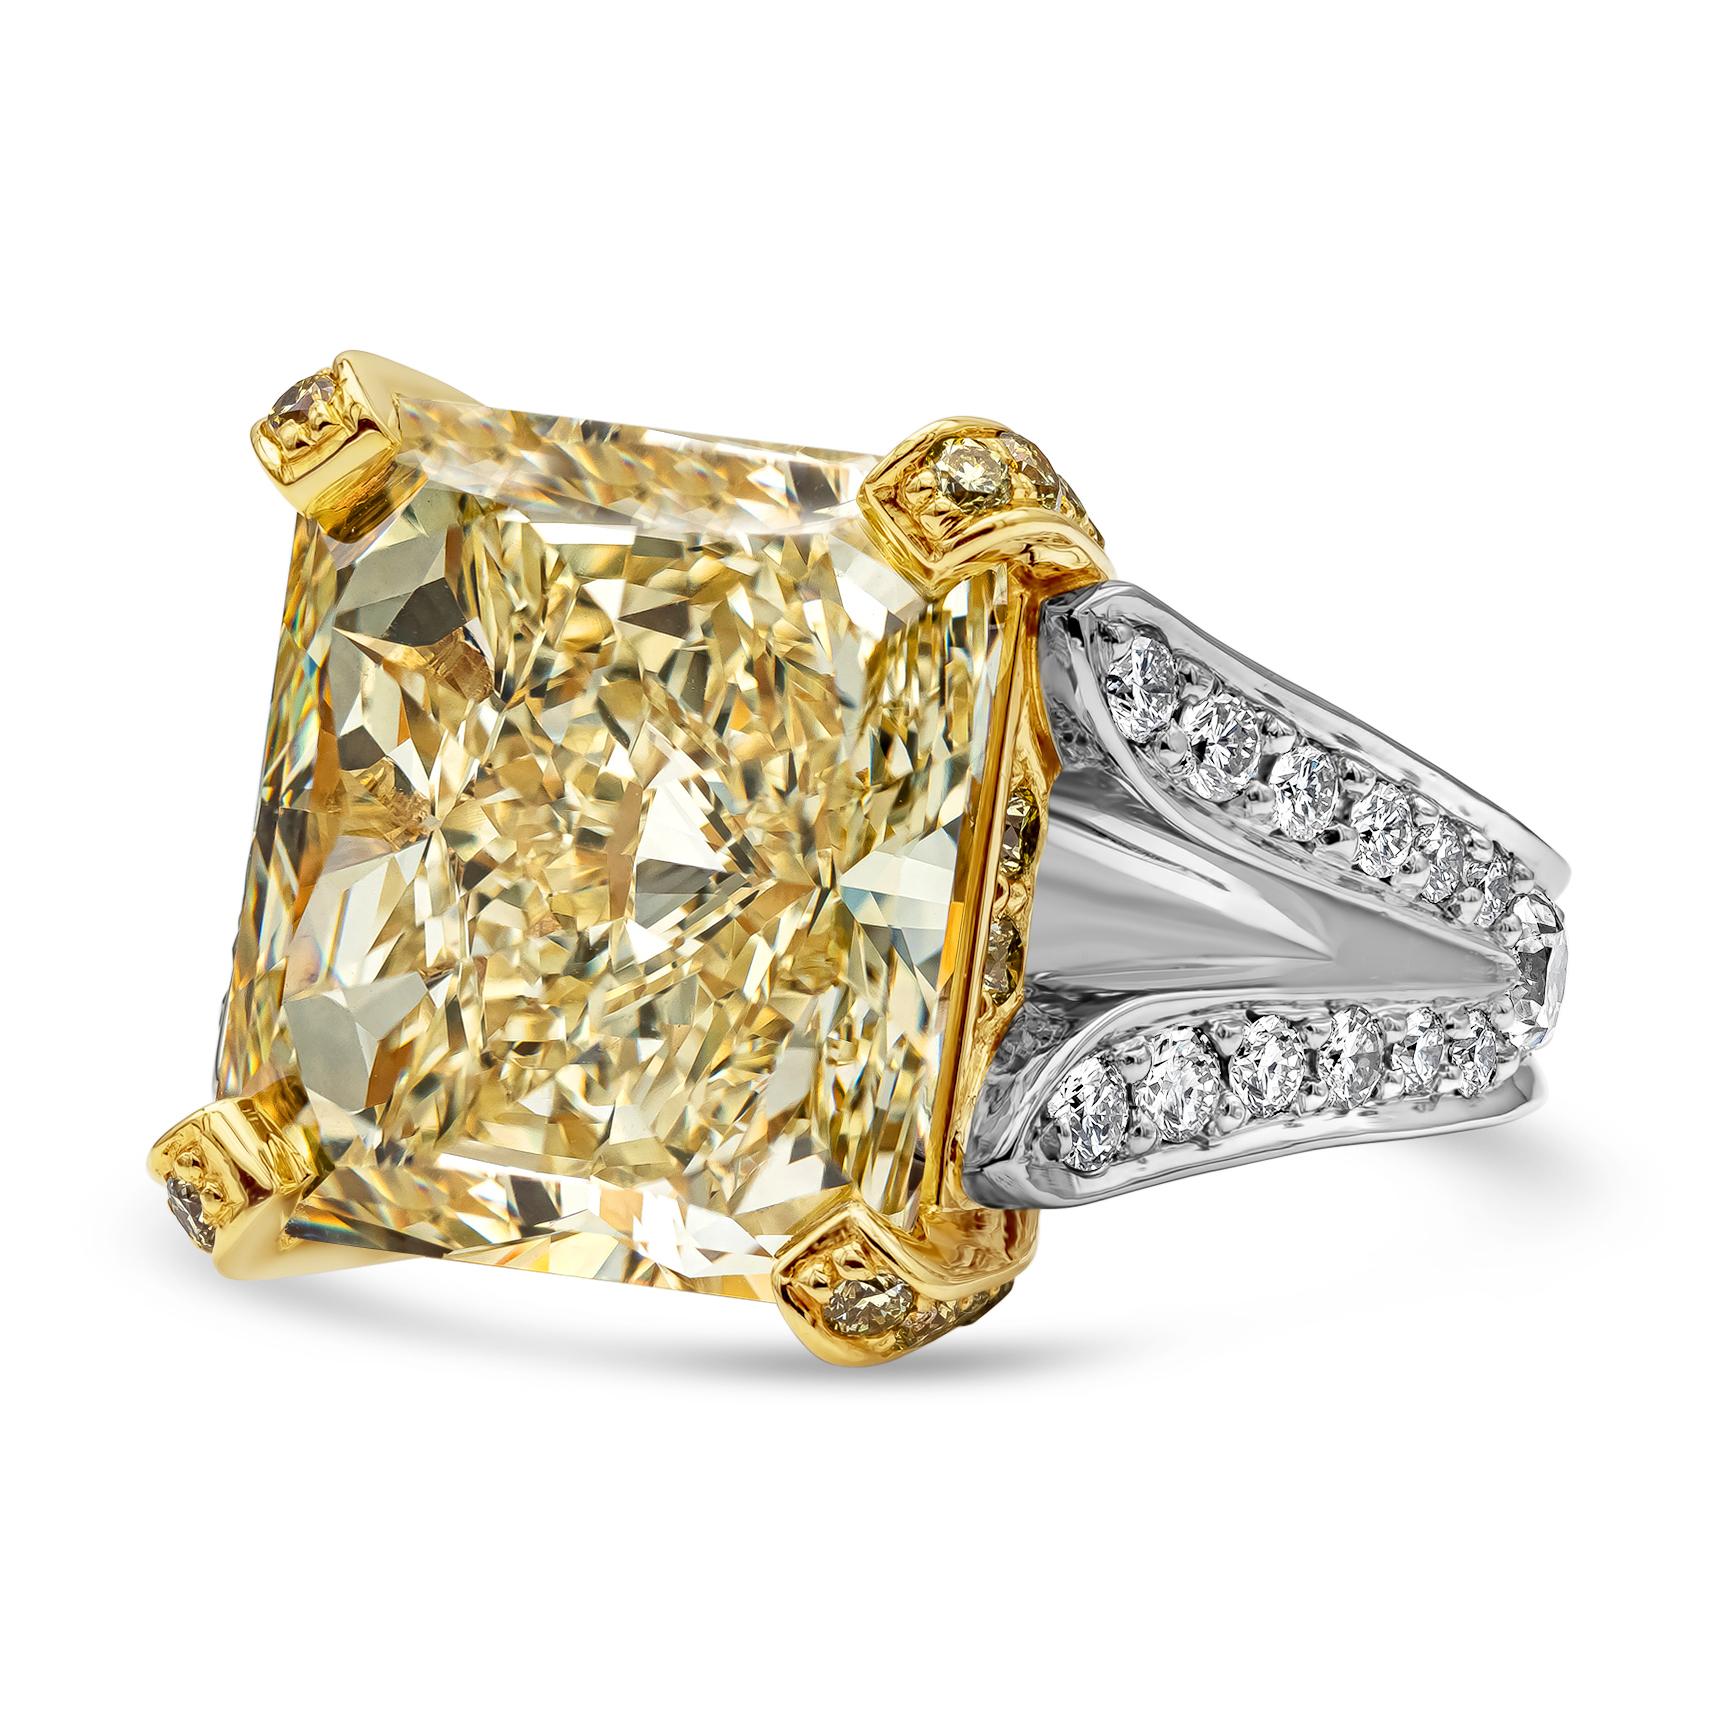 Une élégante et luxueuse bague de fiançailles à deux branches, mettant en valeur un diamant radiant de 13,95 carats certifié par le GIA de couleur jaune fantaisie et de pureté VS1, serti dans un panier à quatre branches en or jaune 18 carats